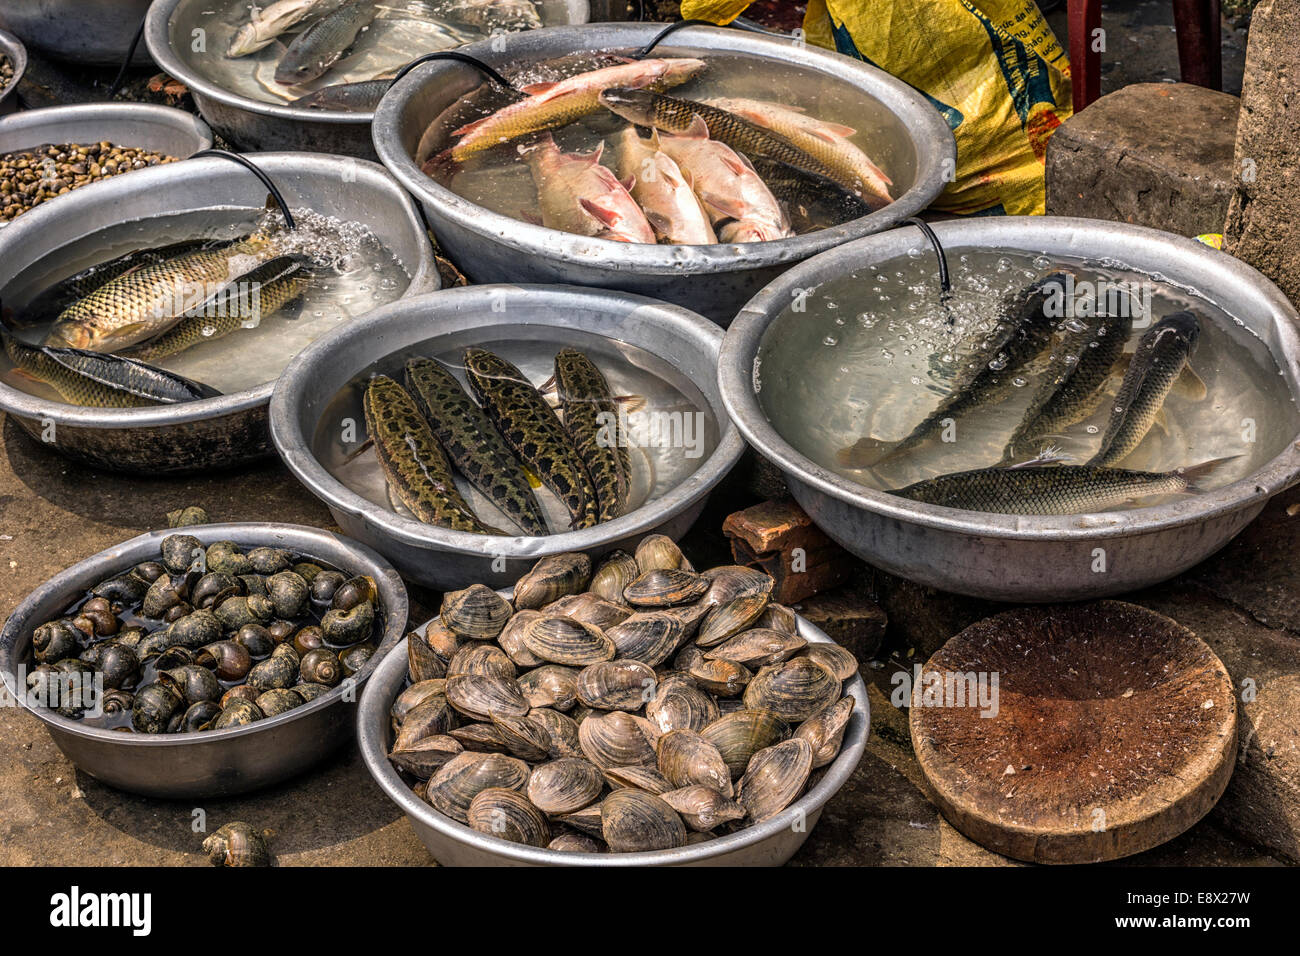 Basins with fresh fish and clams at market in Sa Pa. Stock Photo